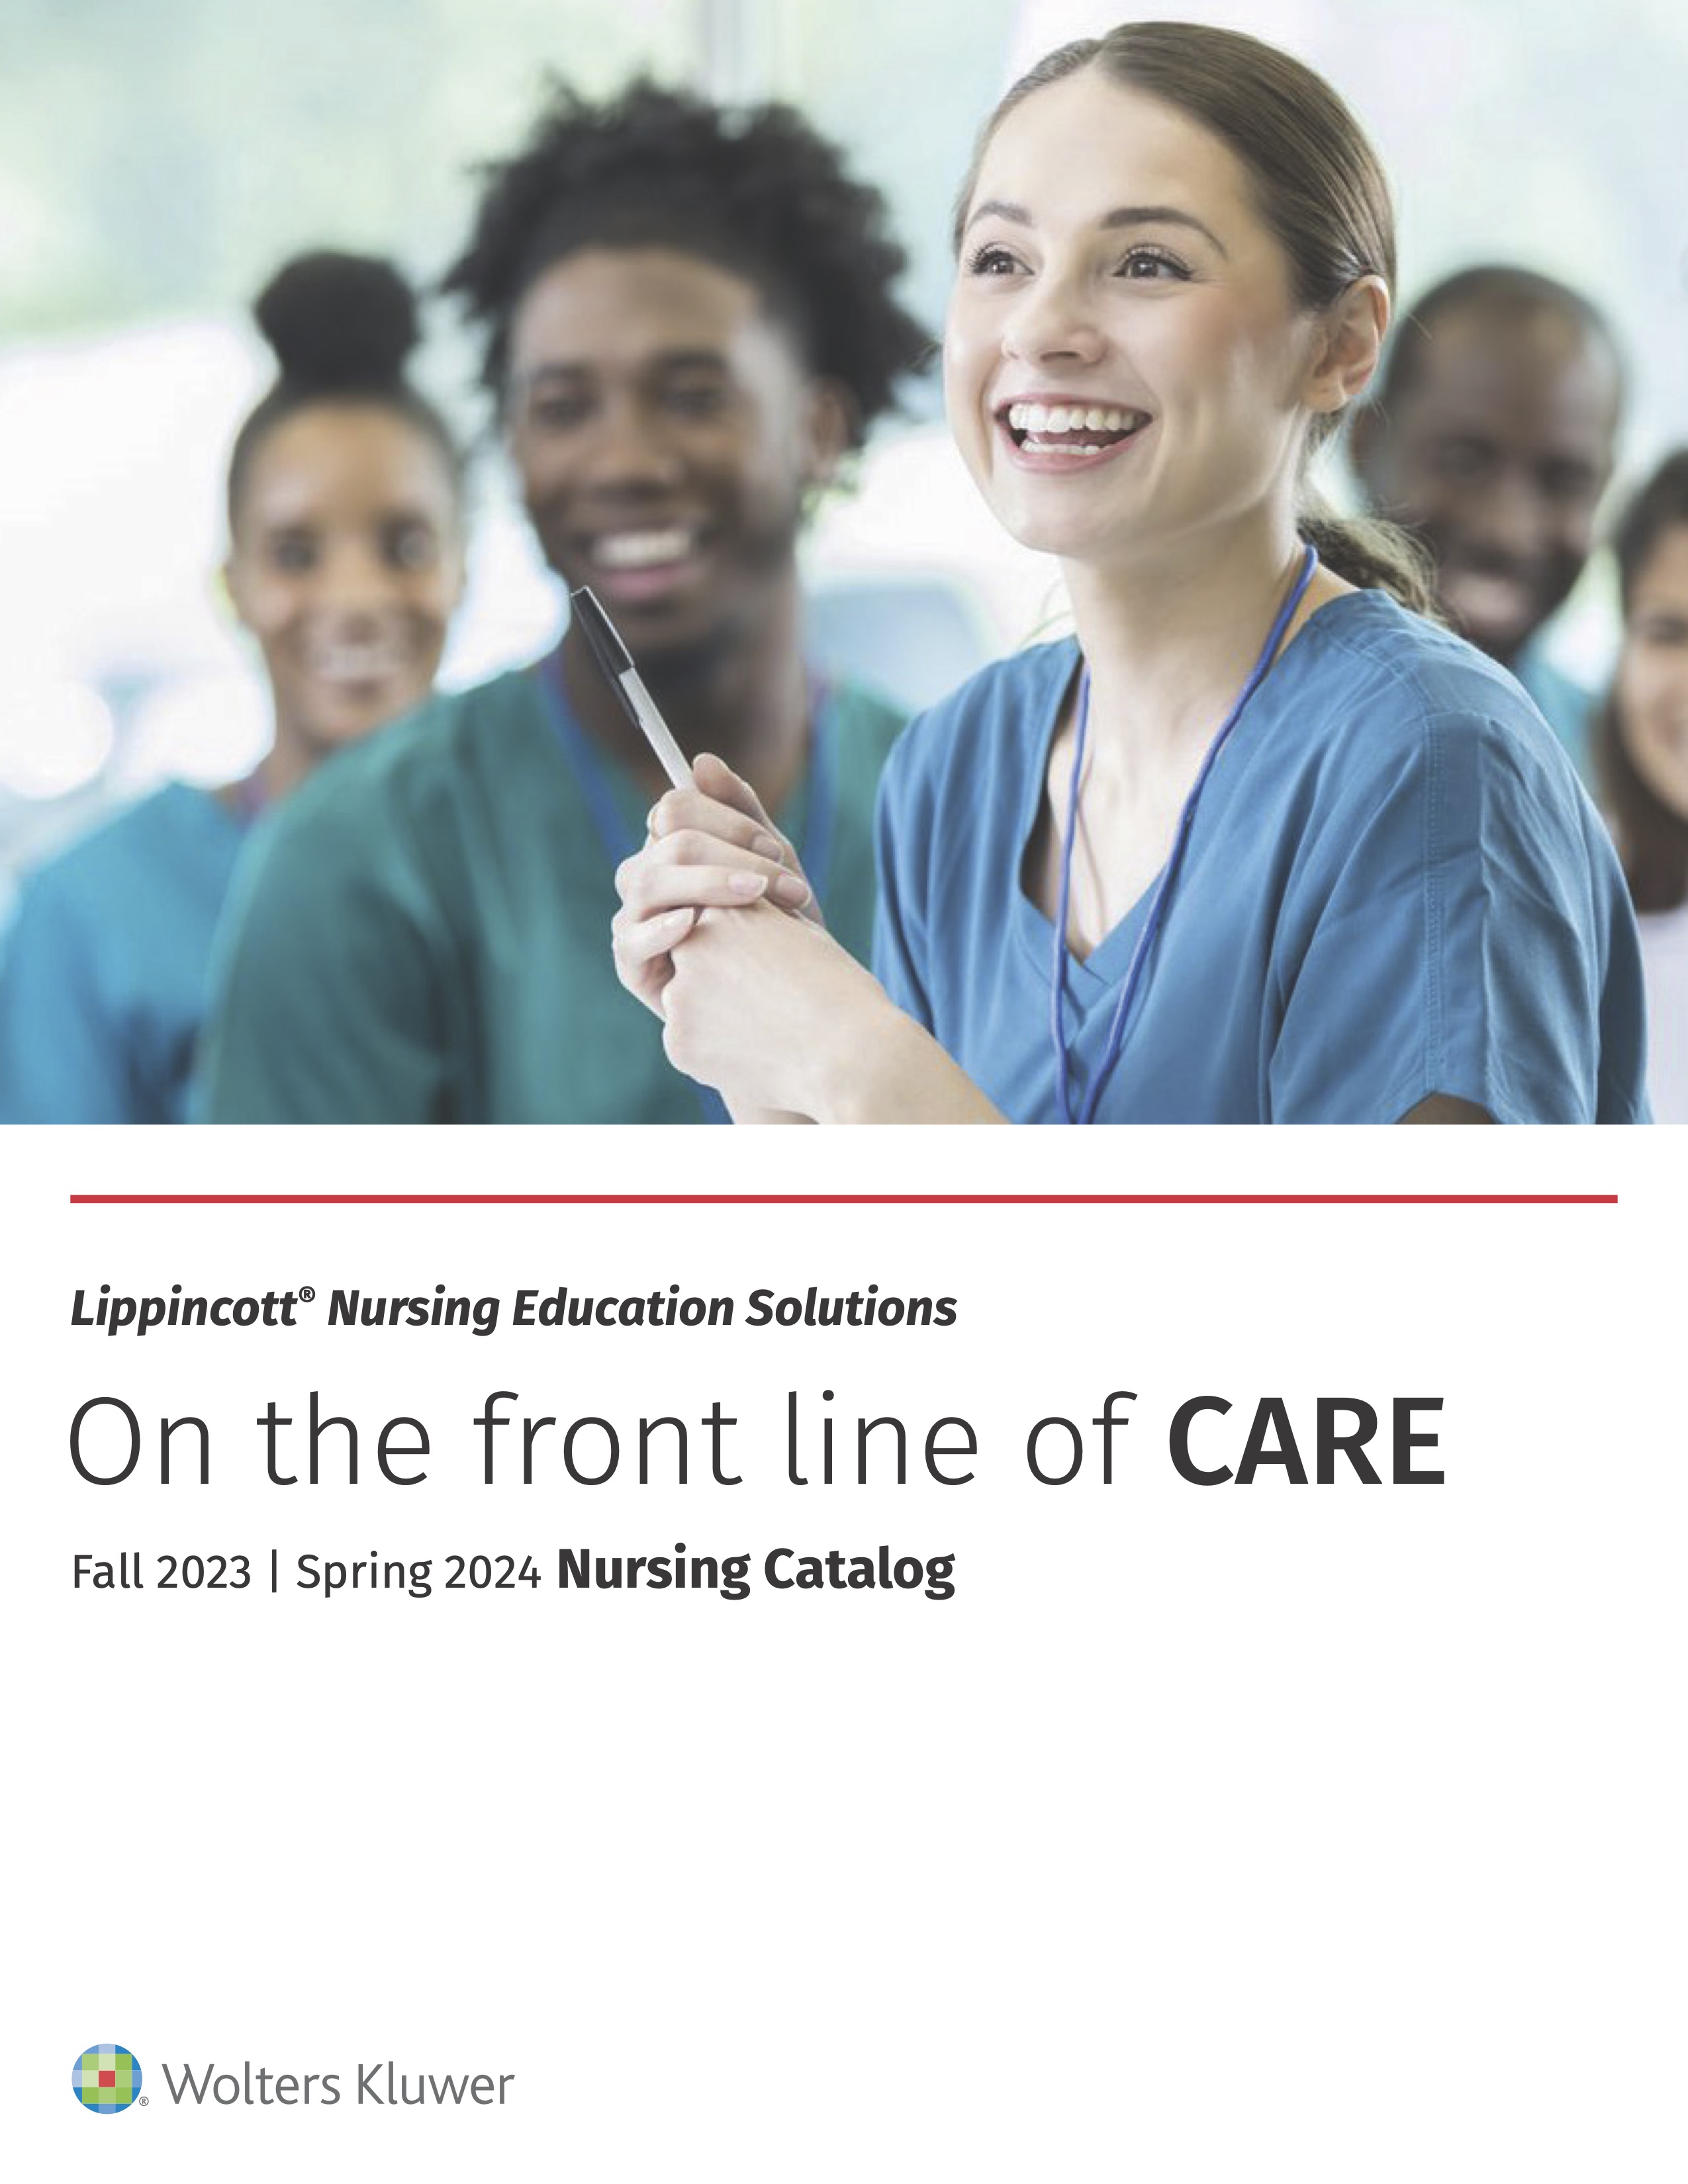 Nurse holding binder, smiling at camera